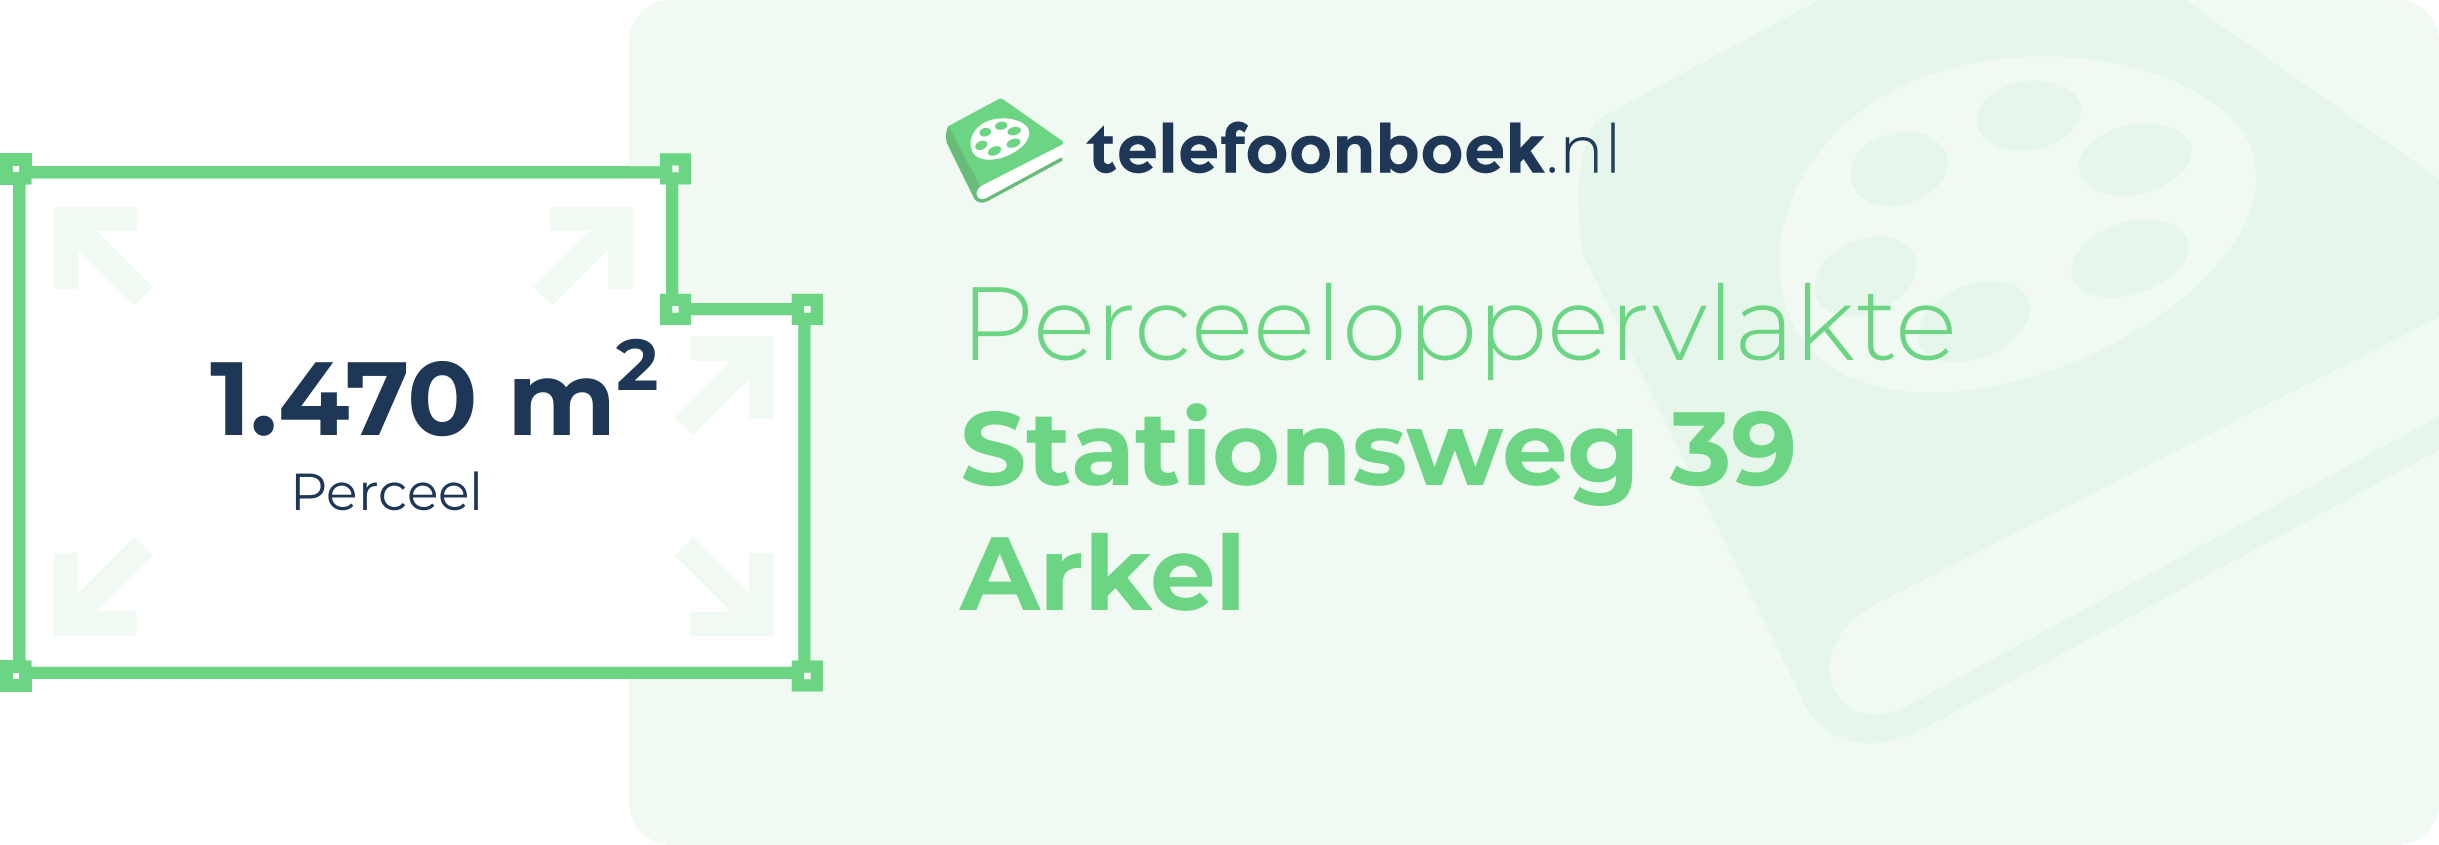 Perceeloppervlakte Stationsweg 39 Arkel